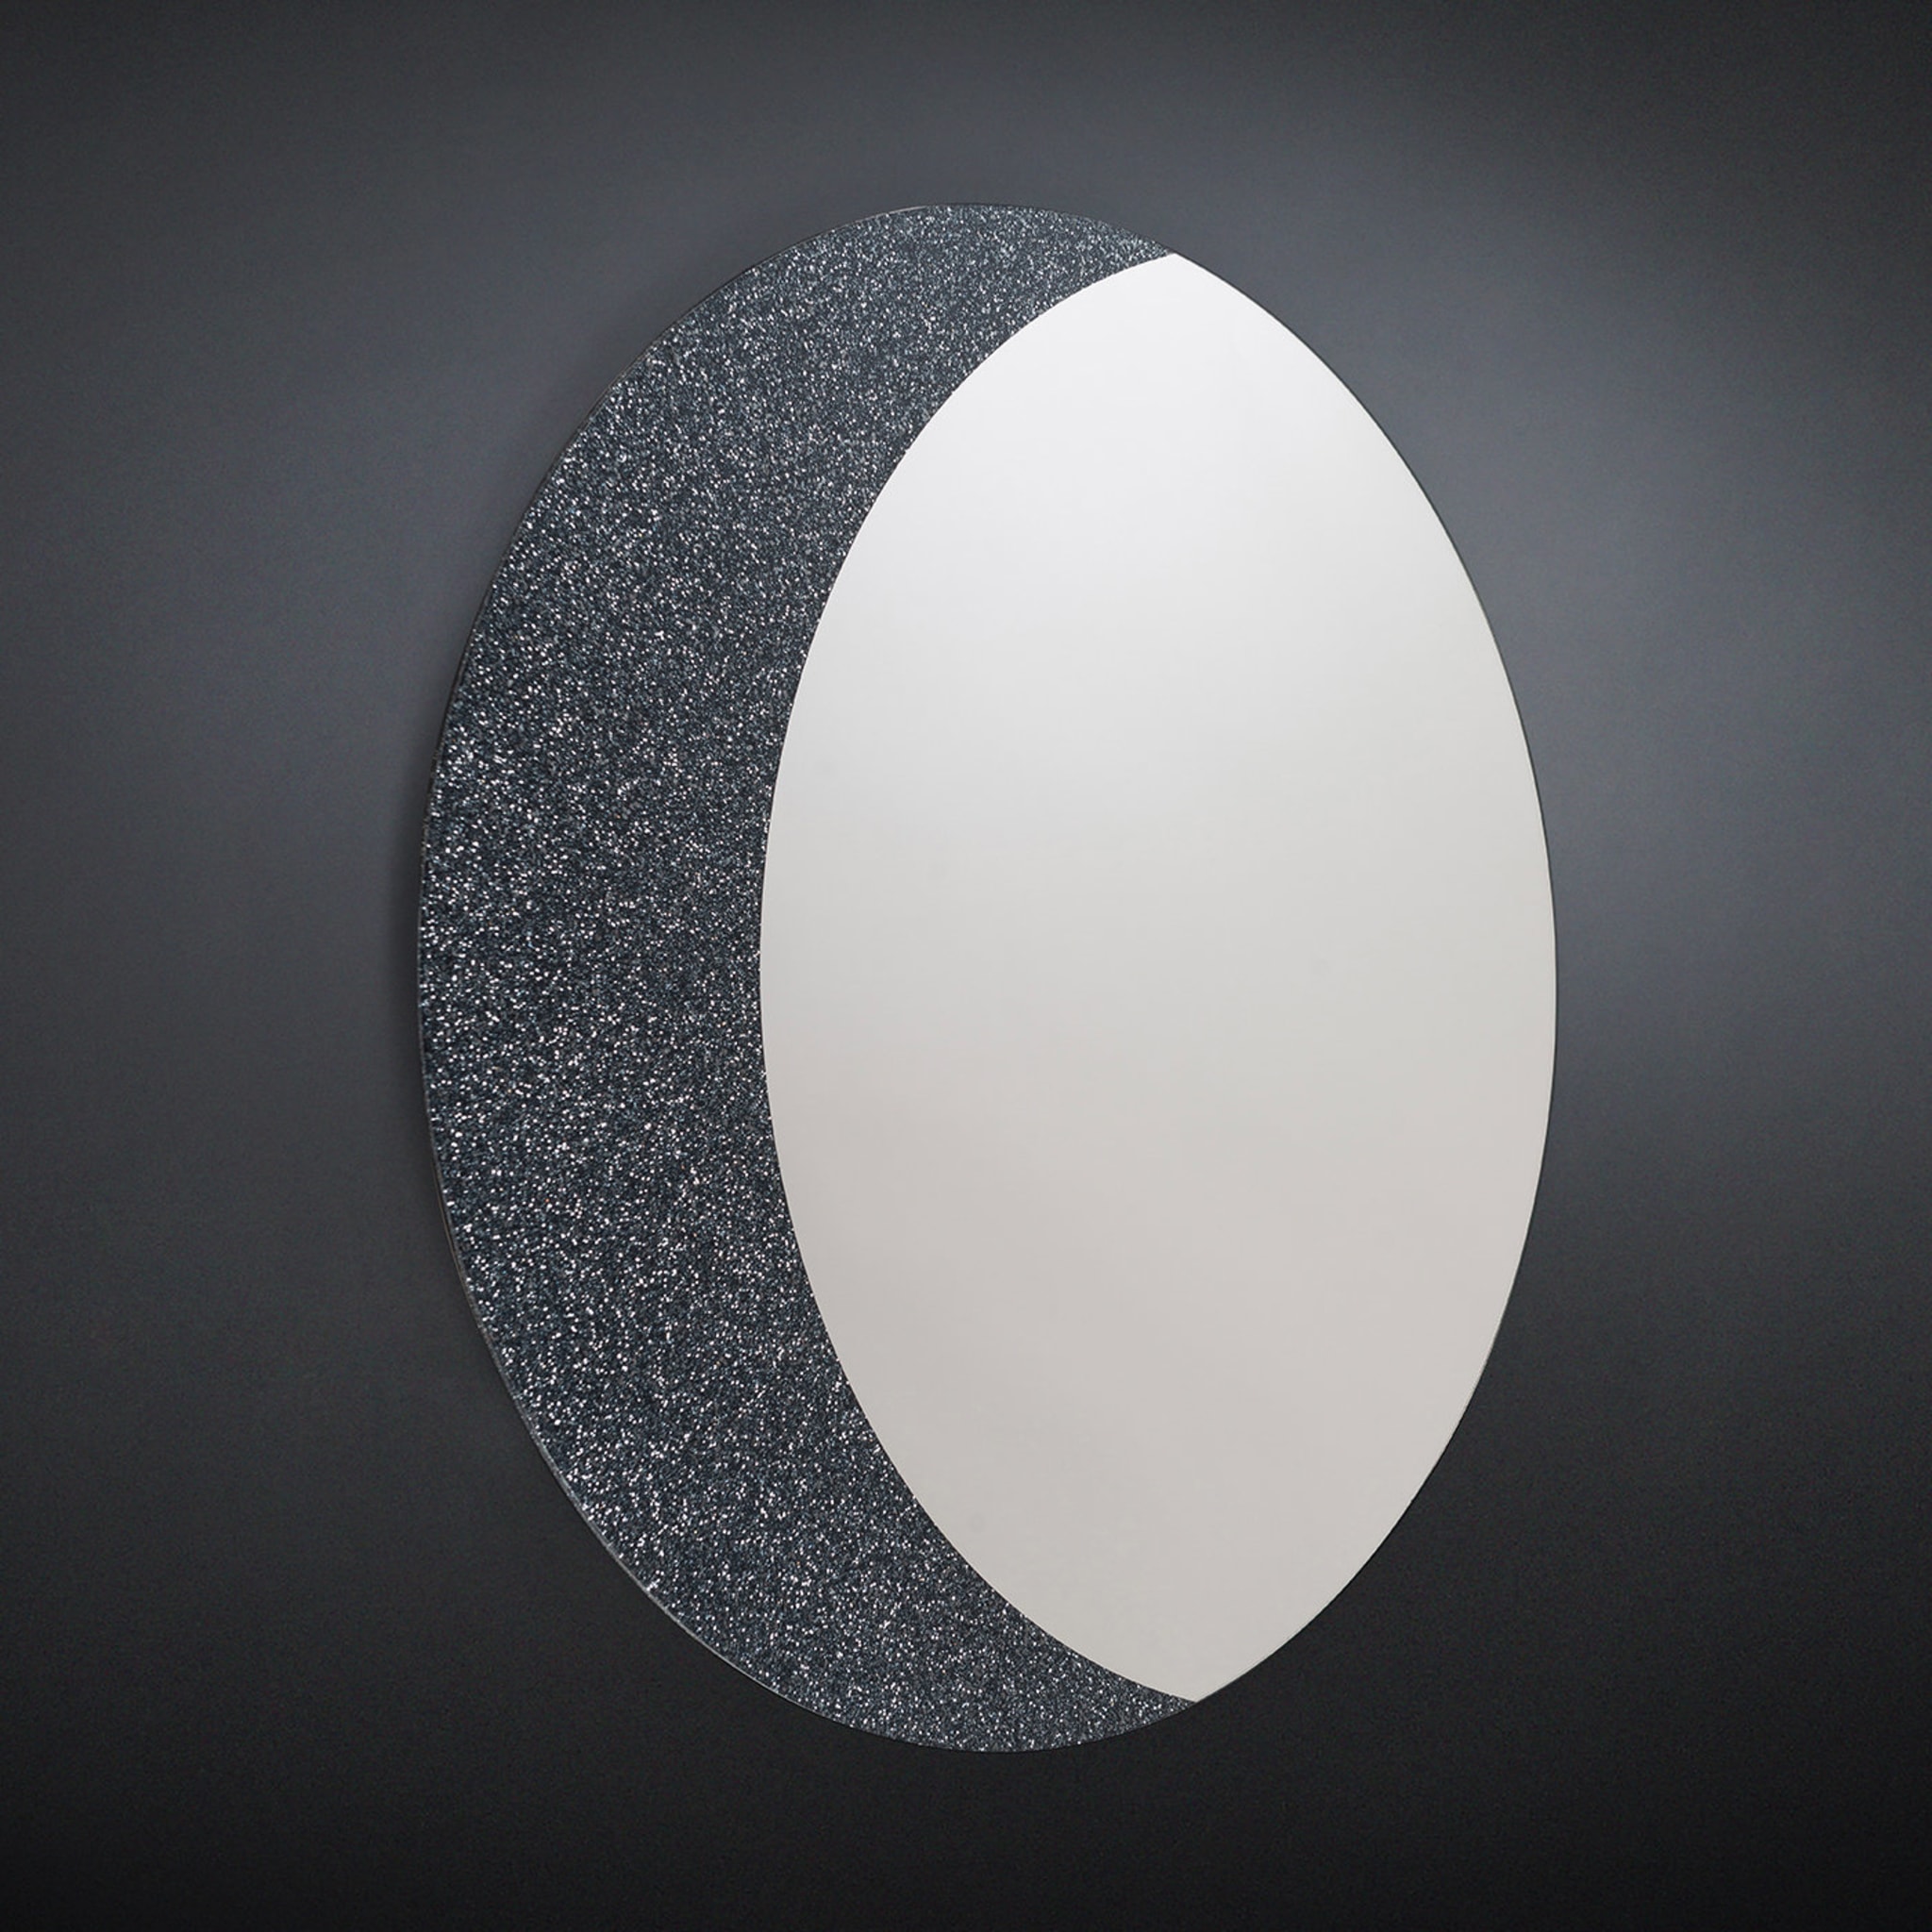 Moon Mirror by Giorgio Ragazzini - Alternative view 1